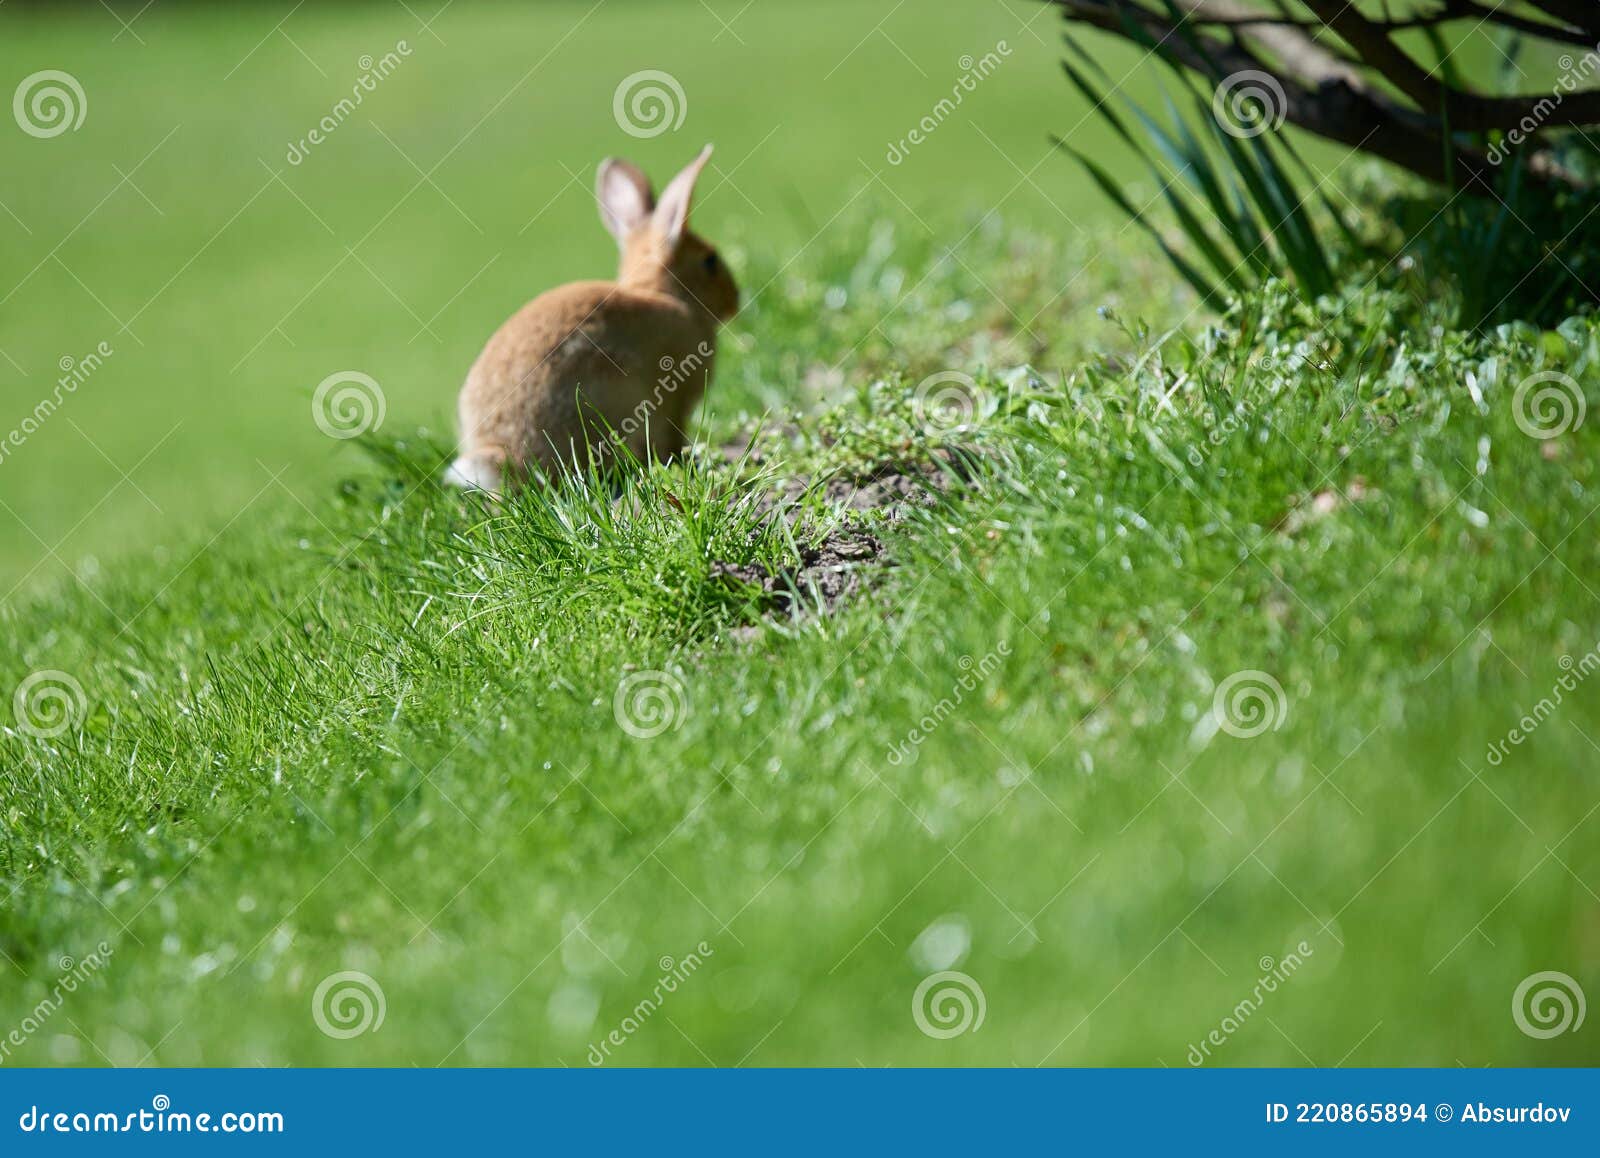 图片素材 : 草, 野生动物, 宠物, 弹簧, 哺乳动物, 花园, 动物群, 脊椎动物, 国内兔, 兔子和野兔, 木兔子 3504x2336 ...